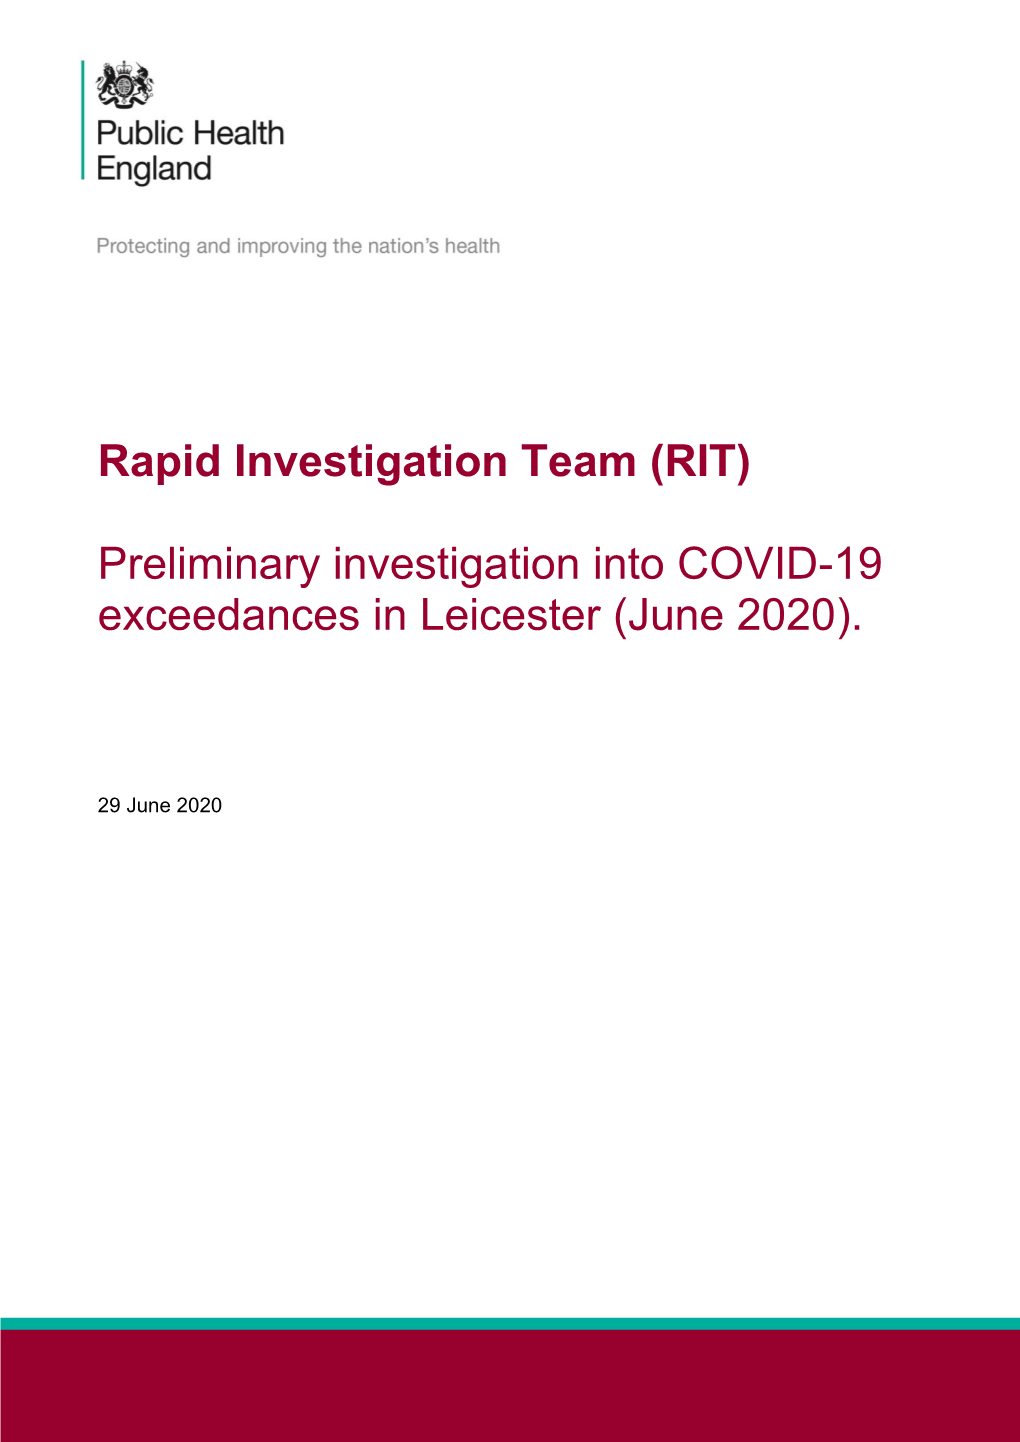 Rapid Investigation Team. COVID-19 Exceedances in Leicester, June 2020